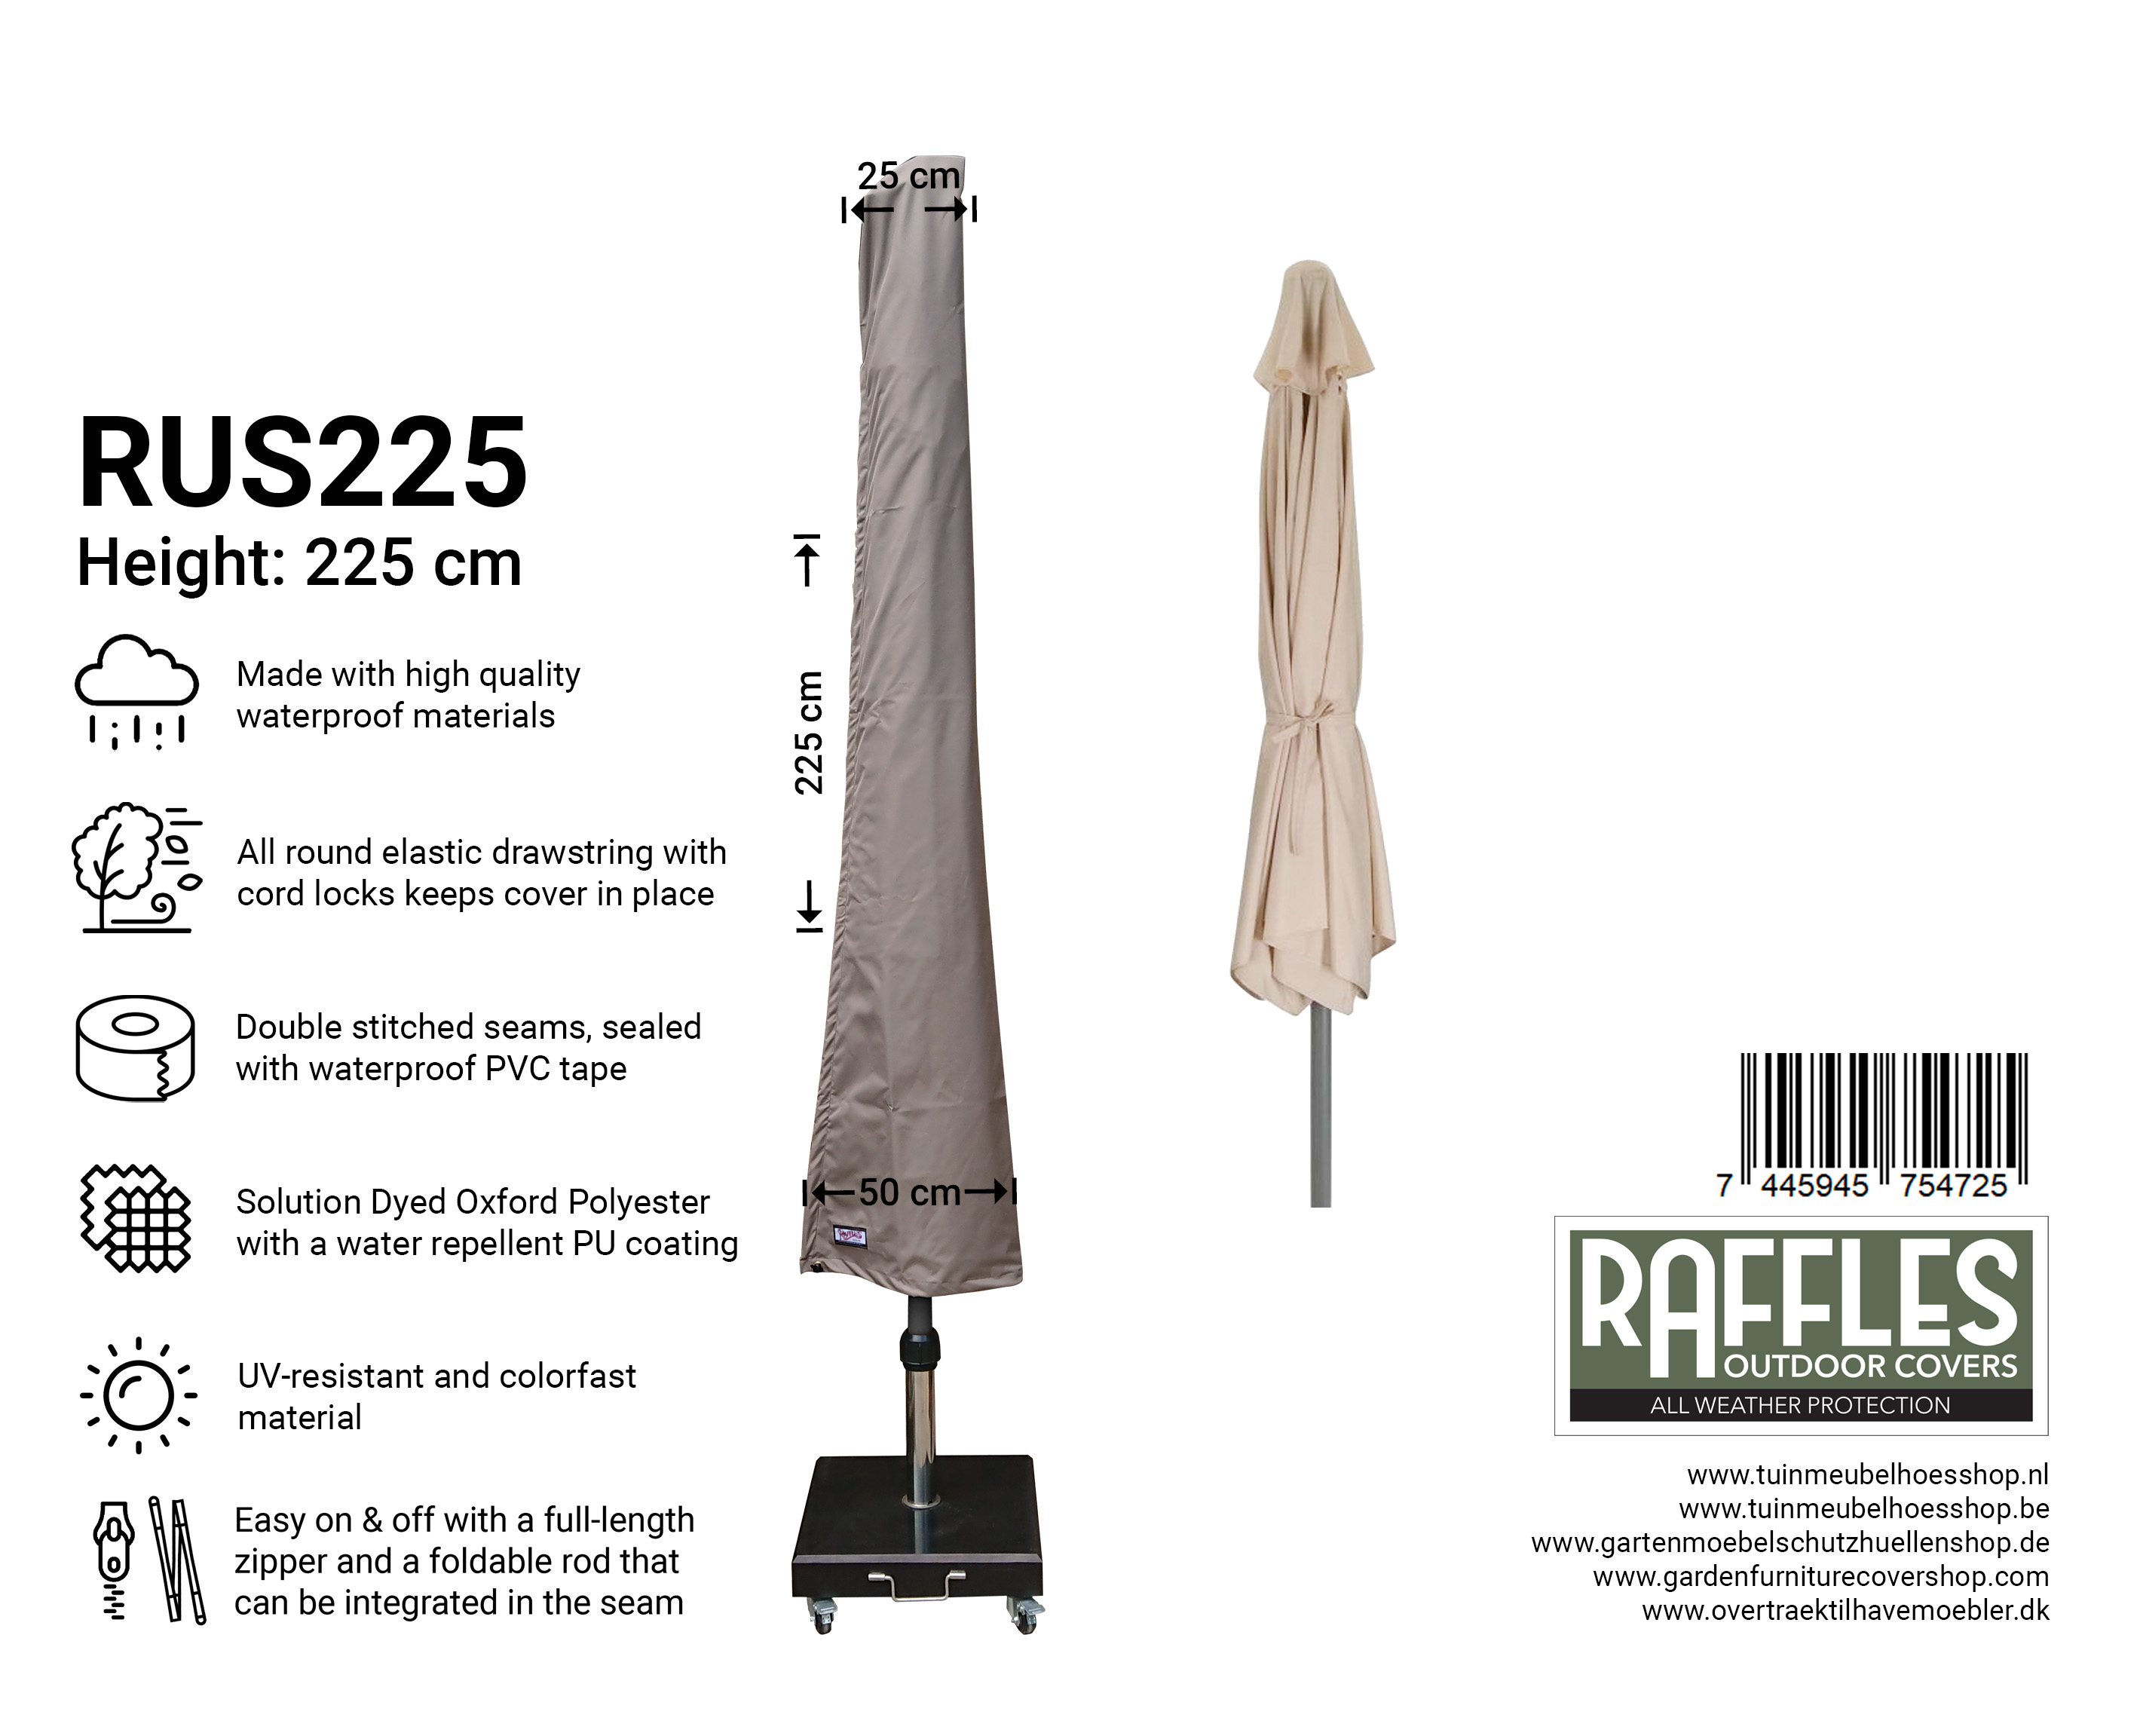 Raffles Cover parasolhoes 225 cm